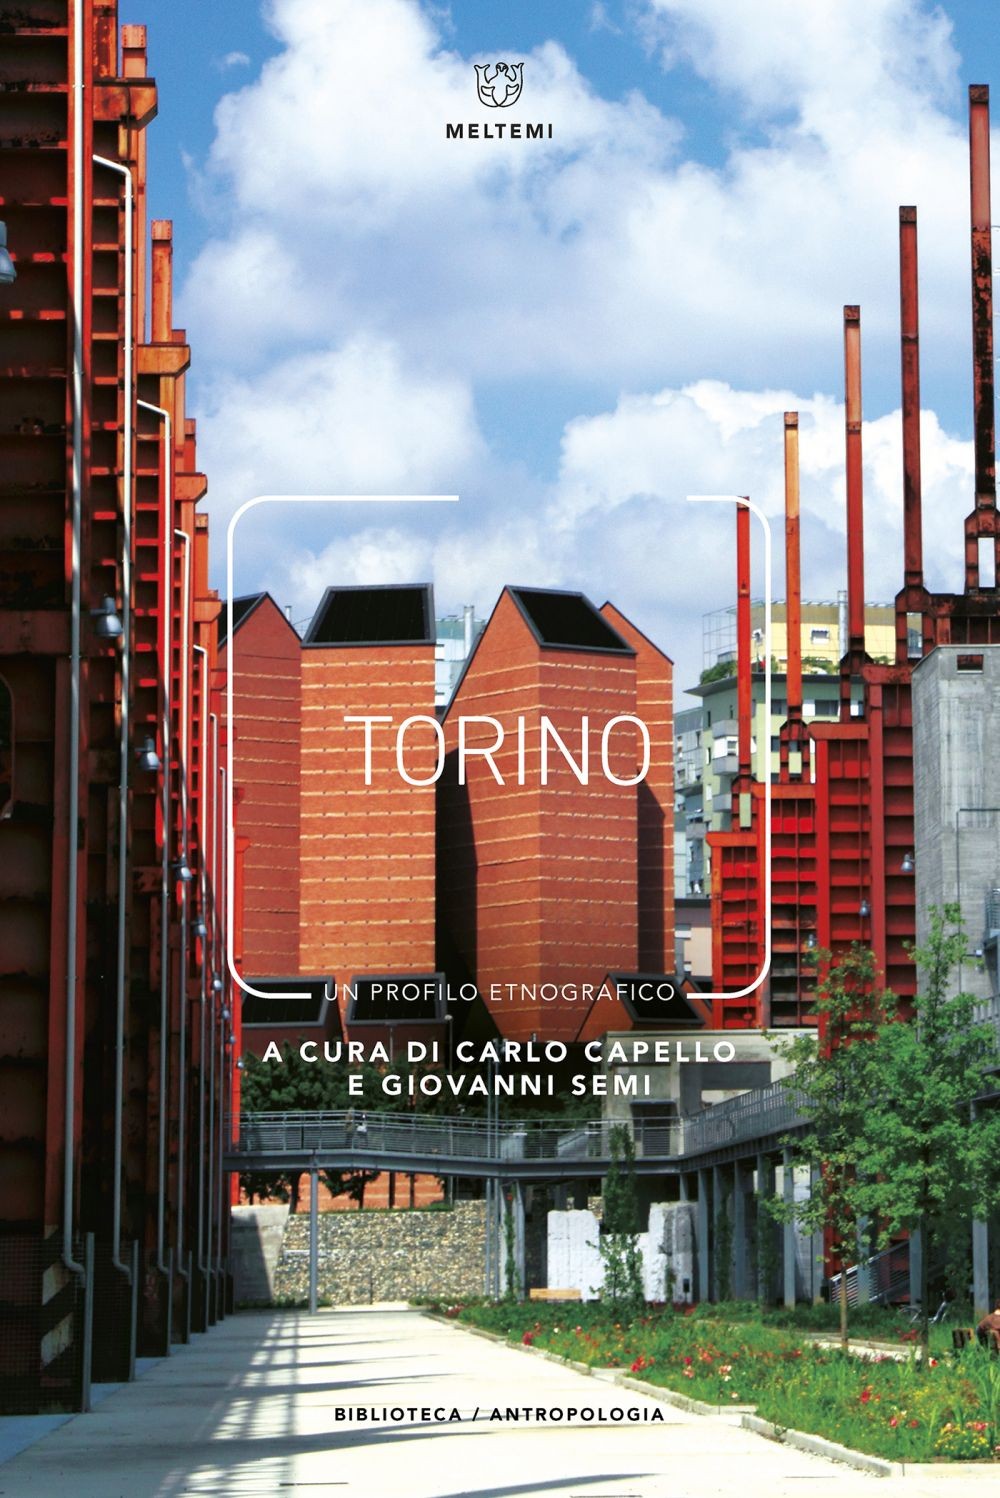 Torino - Librerie.coop